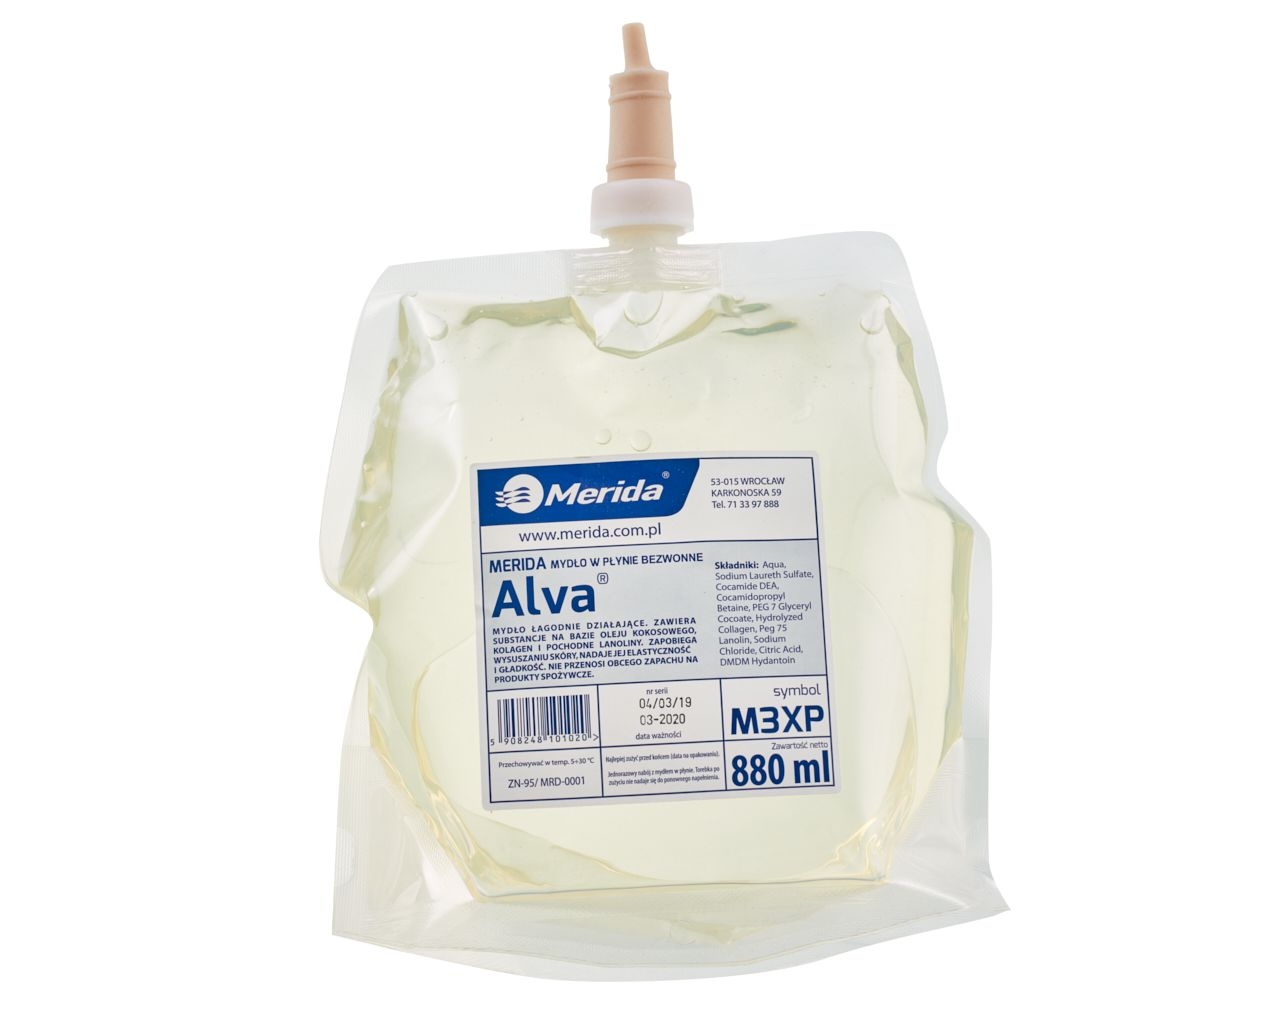 Specjalistyczne mydło w płynie dla przemysłu spożywczego MERIDA ALVA BEZWONNE, wkład jednorazowy 880 ml